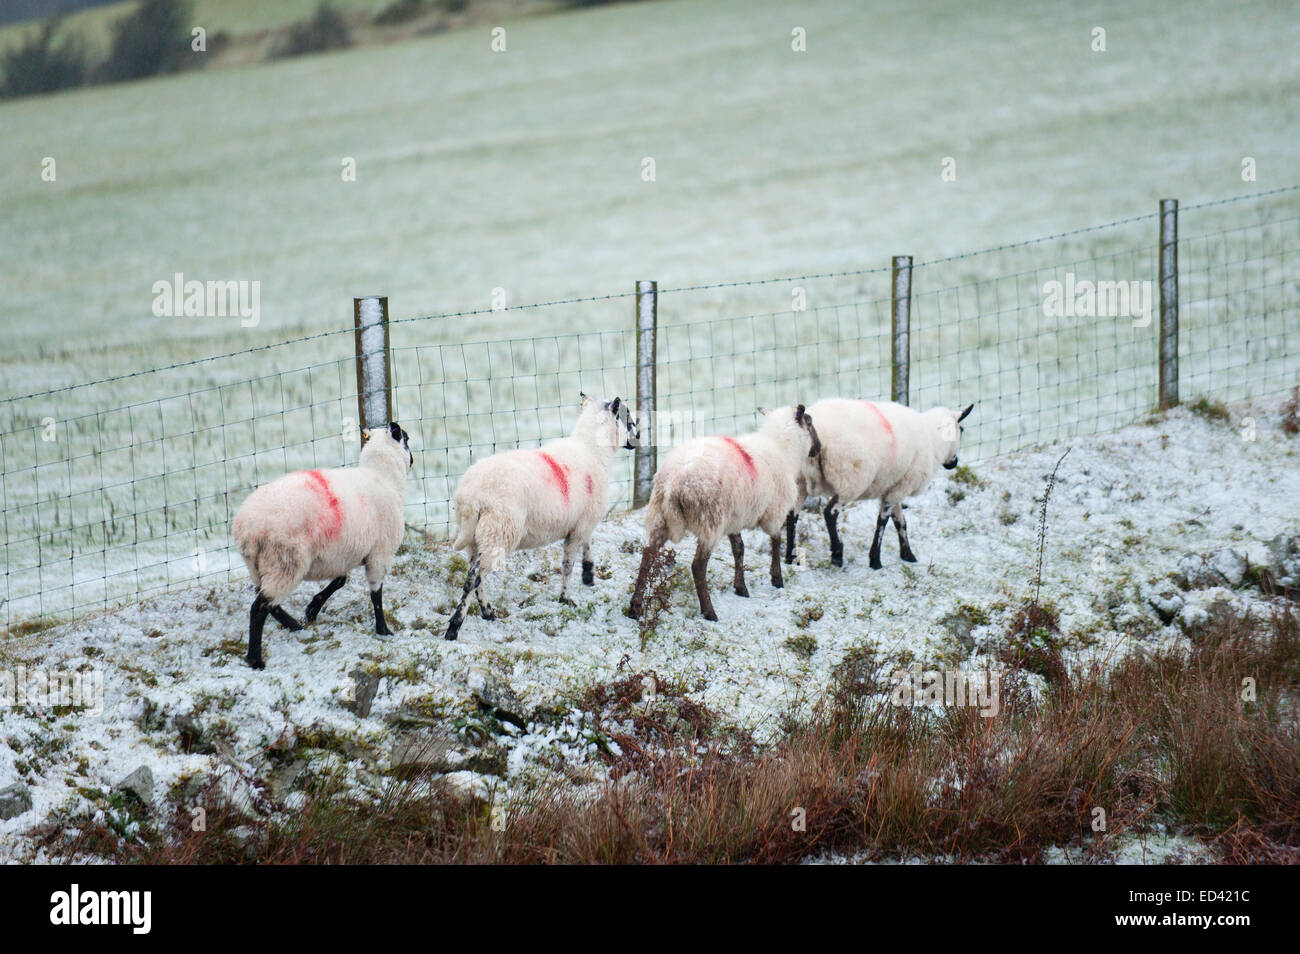 Myndd Epynt, Powys, Regno Unito. 26 dicembre, 2014. Pecore guardare malconce da Blizzard. La grandine e la neve ha colpito gli automobilisti su terra alta circa 350 metri sopra il livello del mare. Credito: Graham M. Lawrence/Alamy Live News. Foto Stock